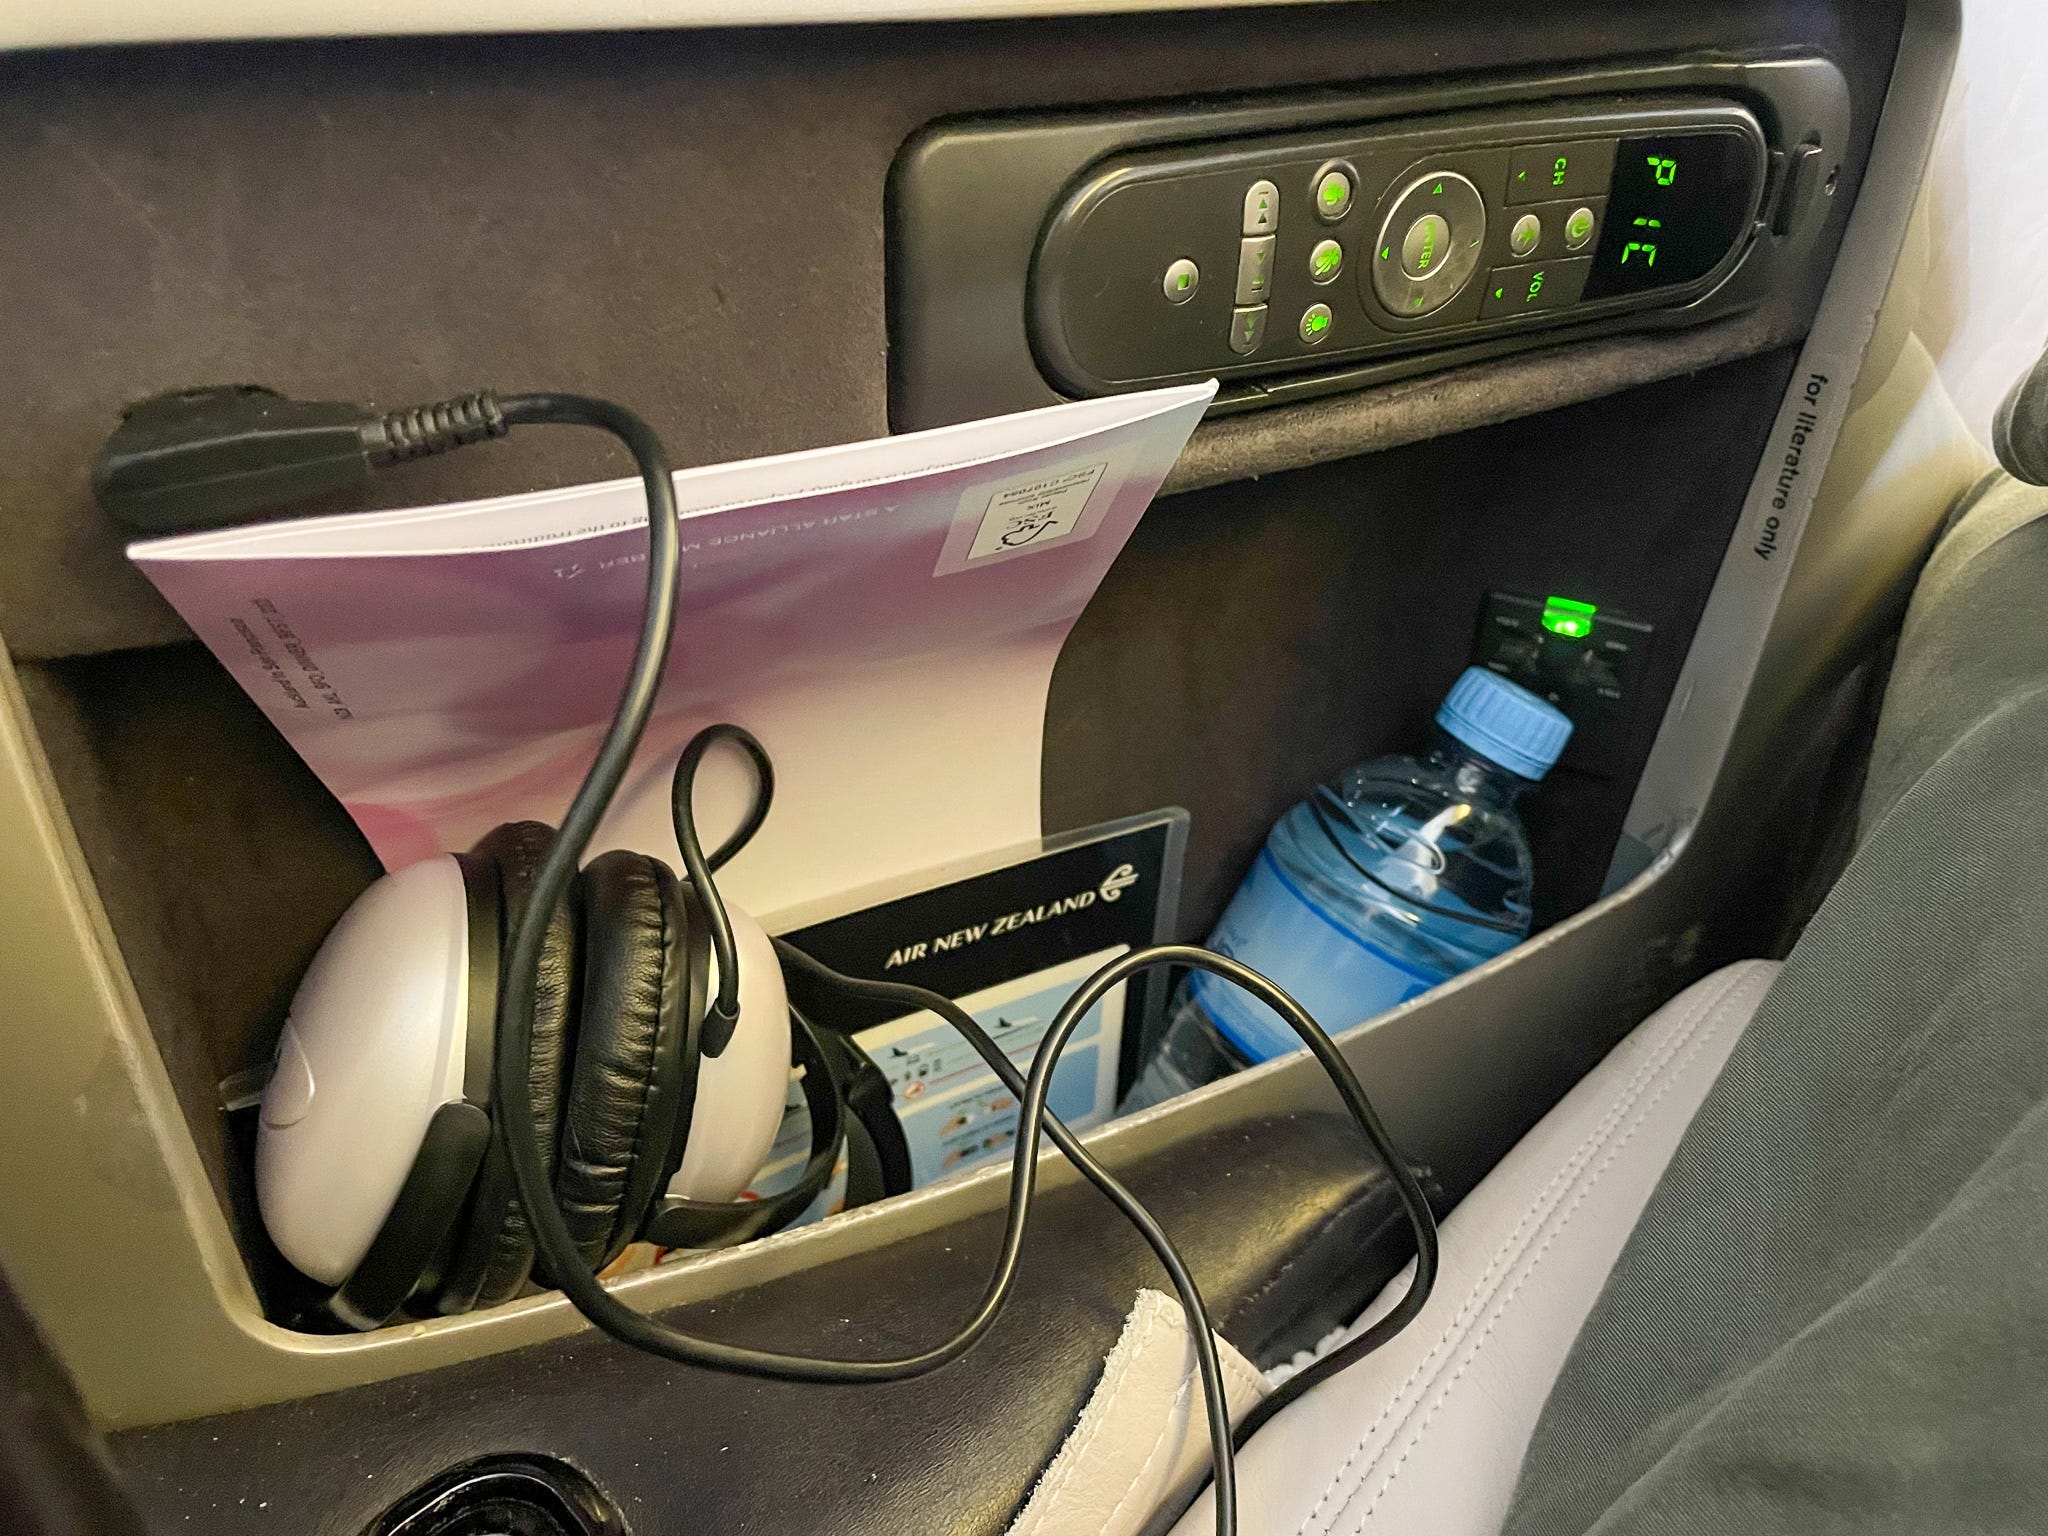 Passagiers in de businessclass van Air New Zealand krijgen een over het oor gedragen koptelefoon met snoer.